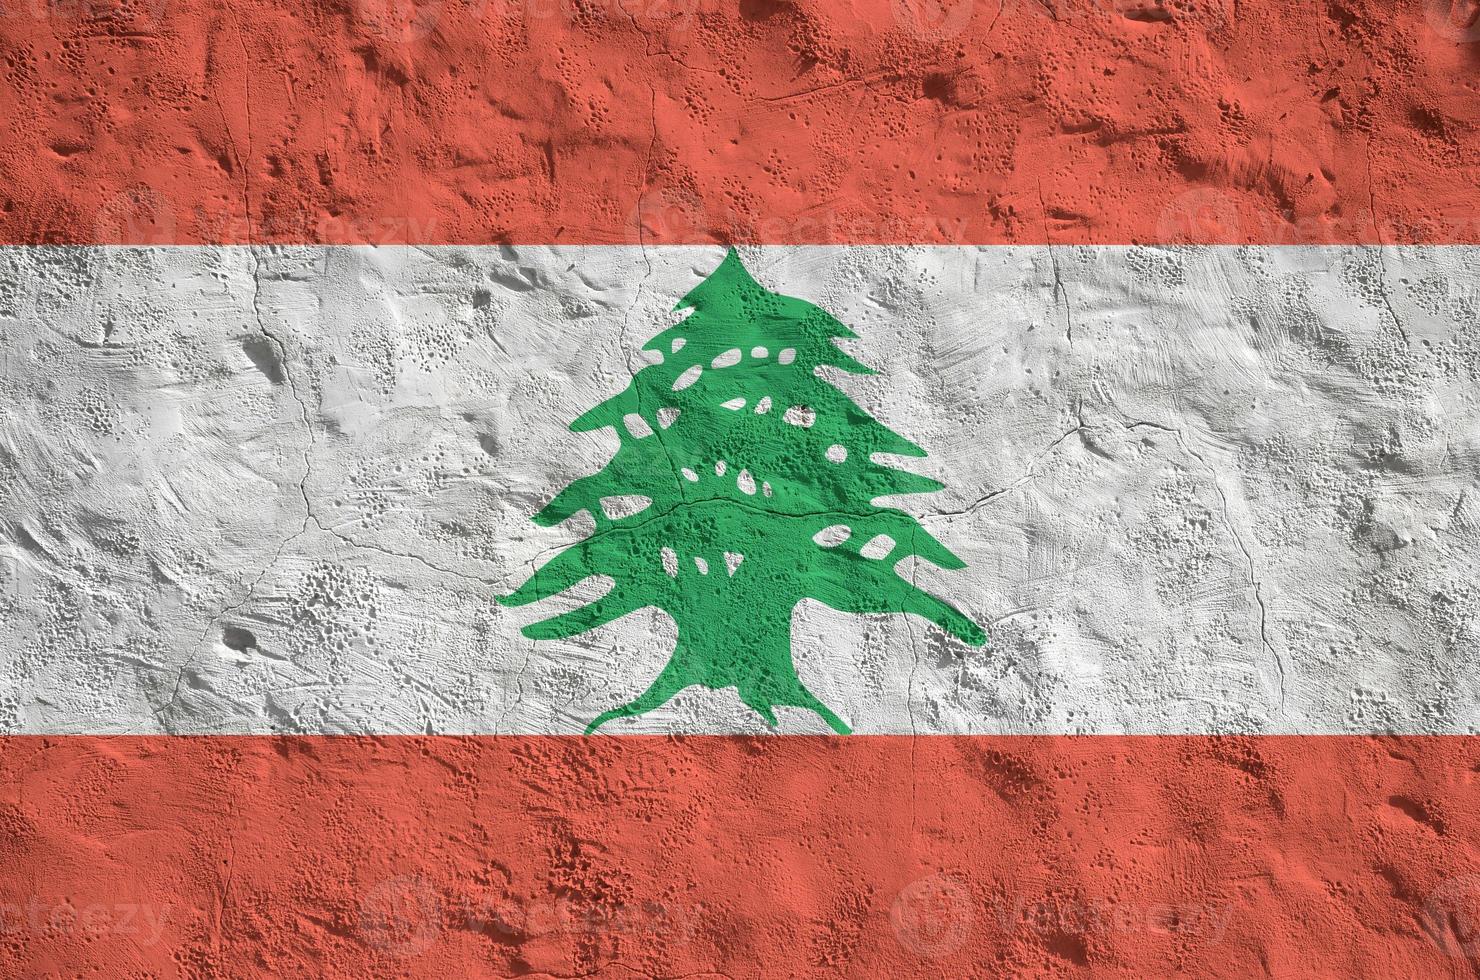 libanon flagga avbildad i ljus måla färger på gammal lättnad putsning vägg. texturerad baner på grov bakgrund foto